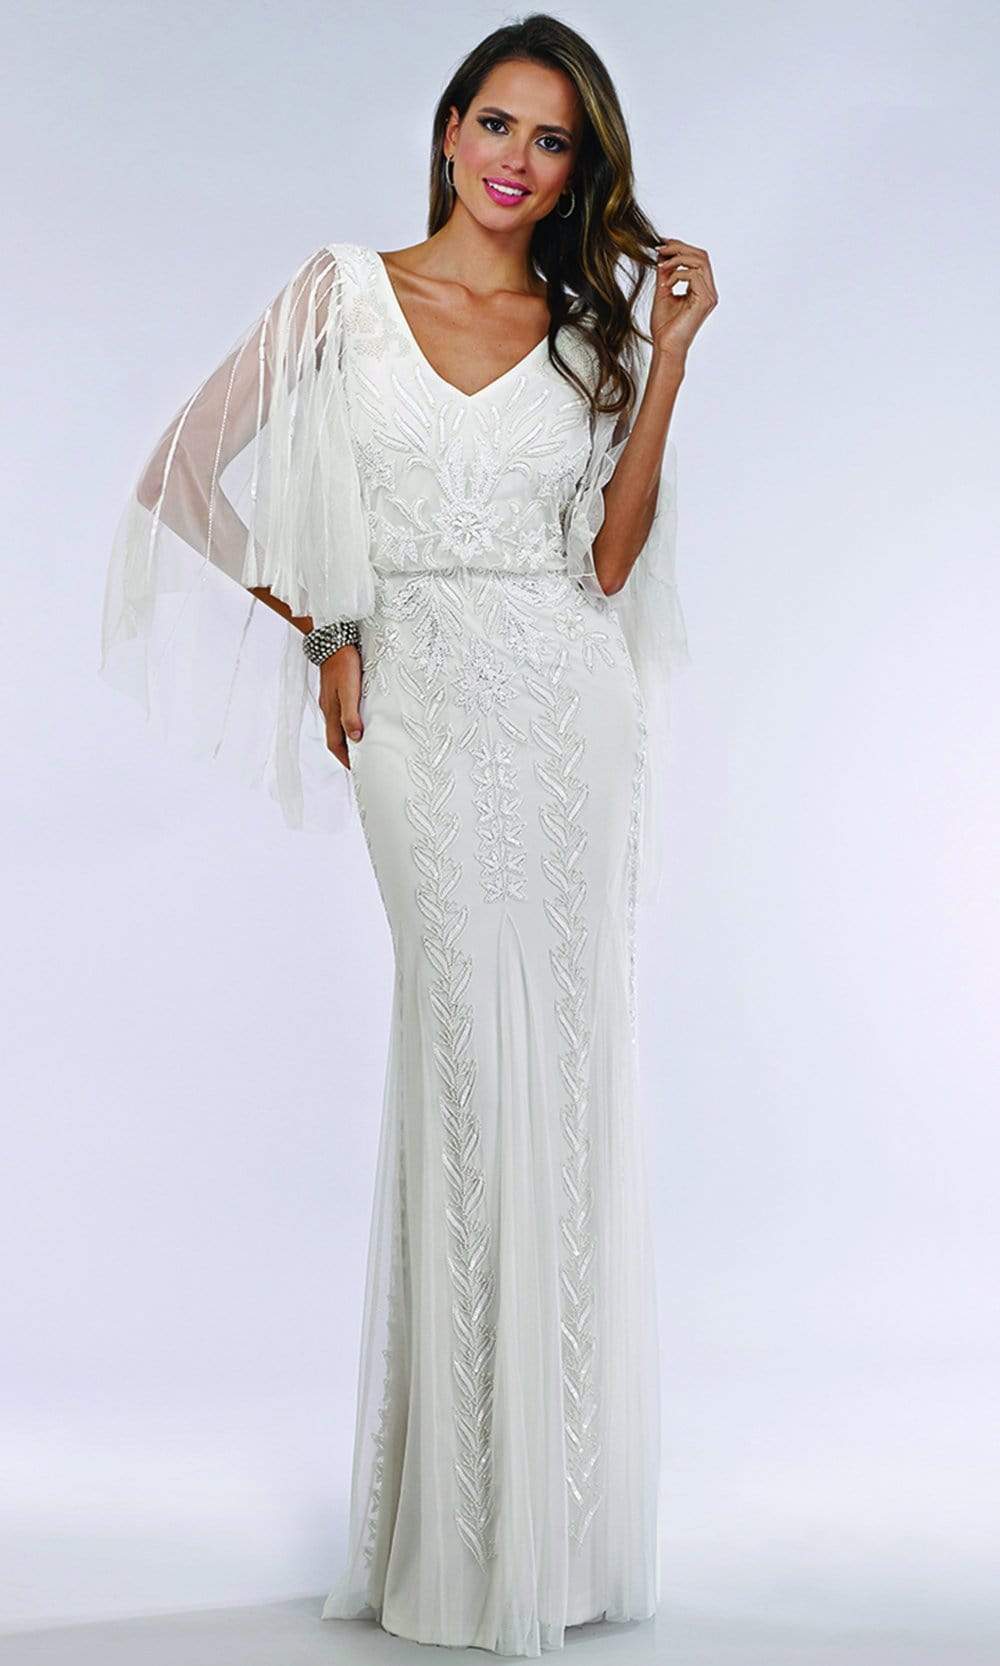 Lara Dresses - 51046 Sheer Cape Sleeve Embellished Sheath Bridal Dress Wedding Dresses 4 / Ivory